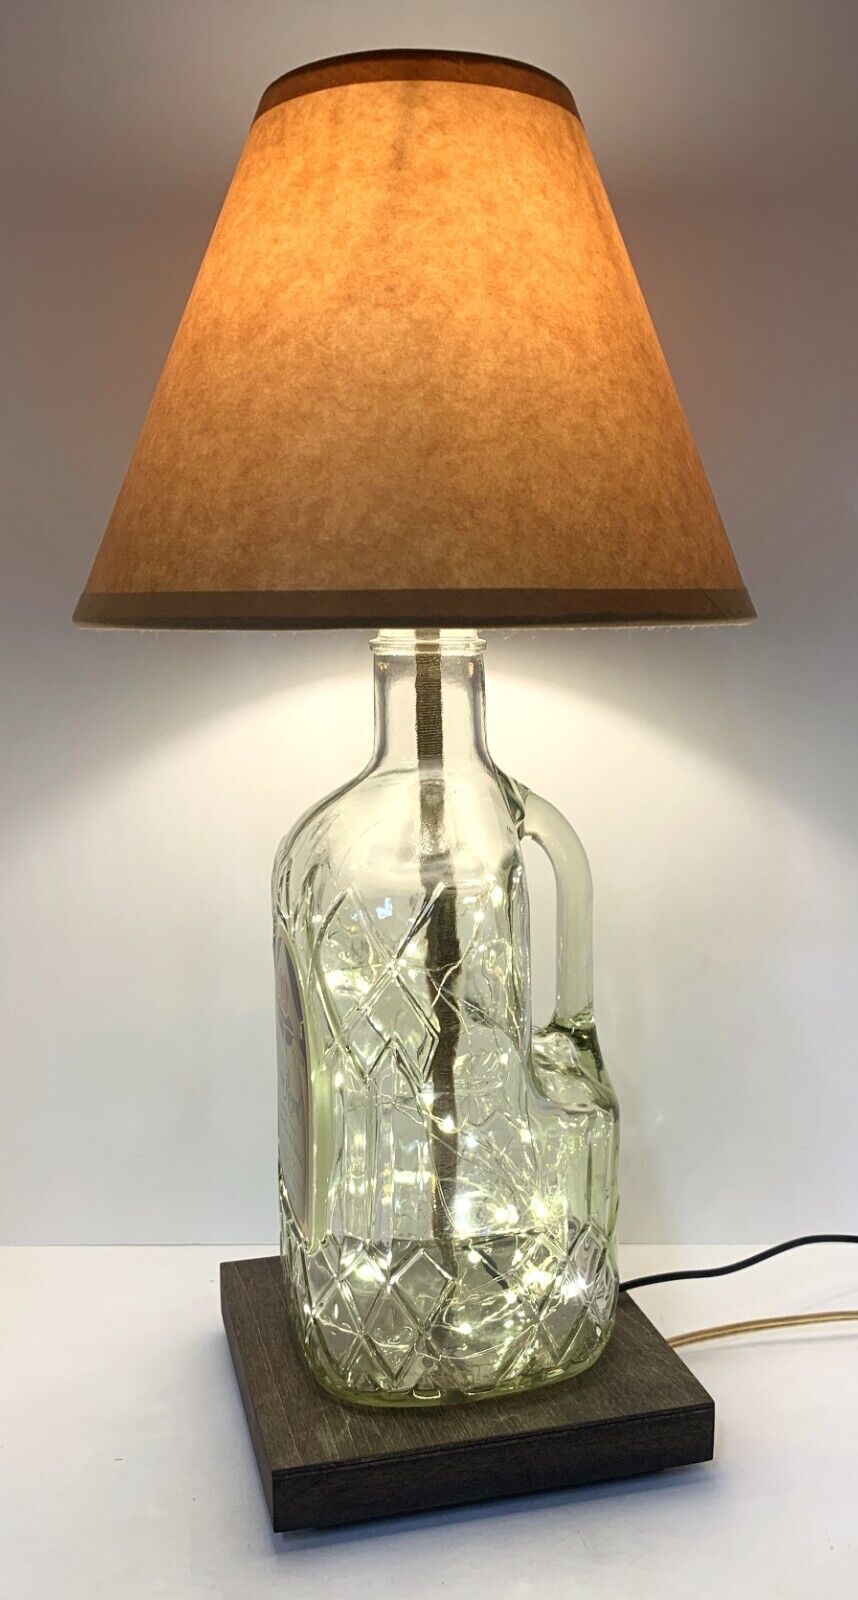 YOUR CHOICE Bottle TABLE LAMP Bar Light w/ USB Fairy Lights, Wood Base & Shade